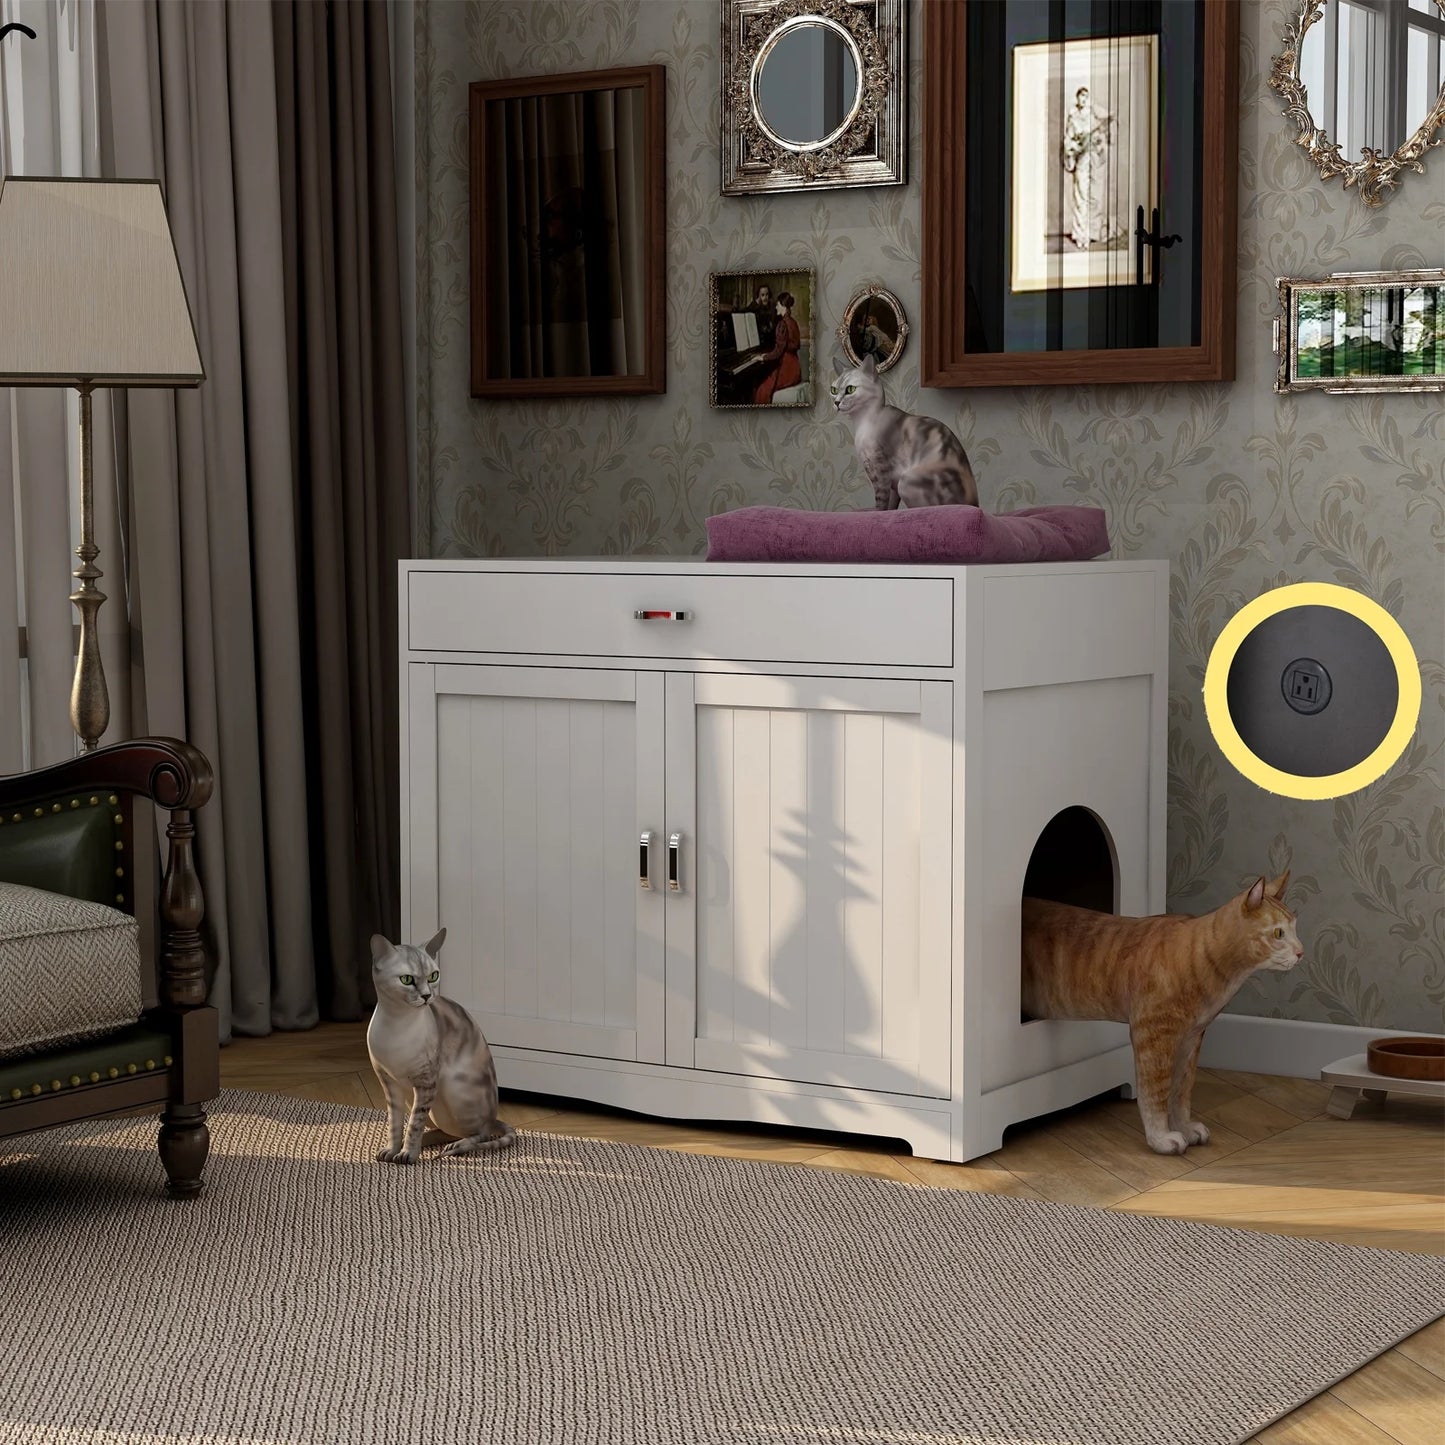 Smart FENDEE Modern Cat Litter Box with Hidden Plug, 2 Doors Wooden Pet House